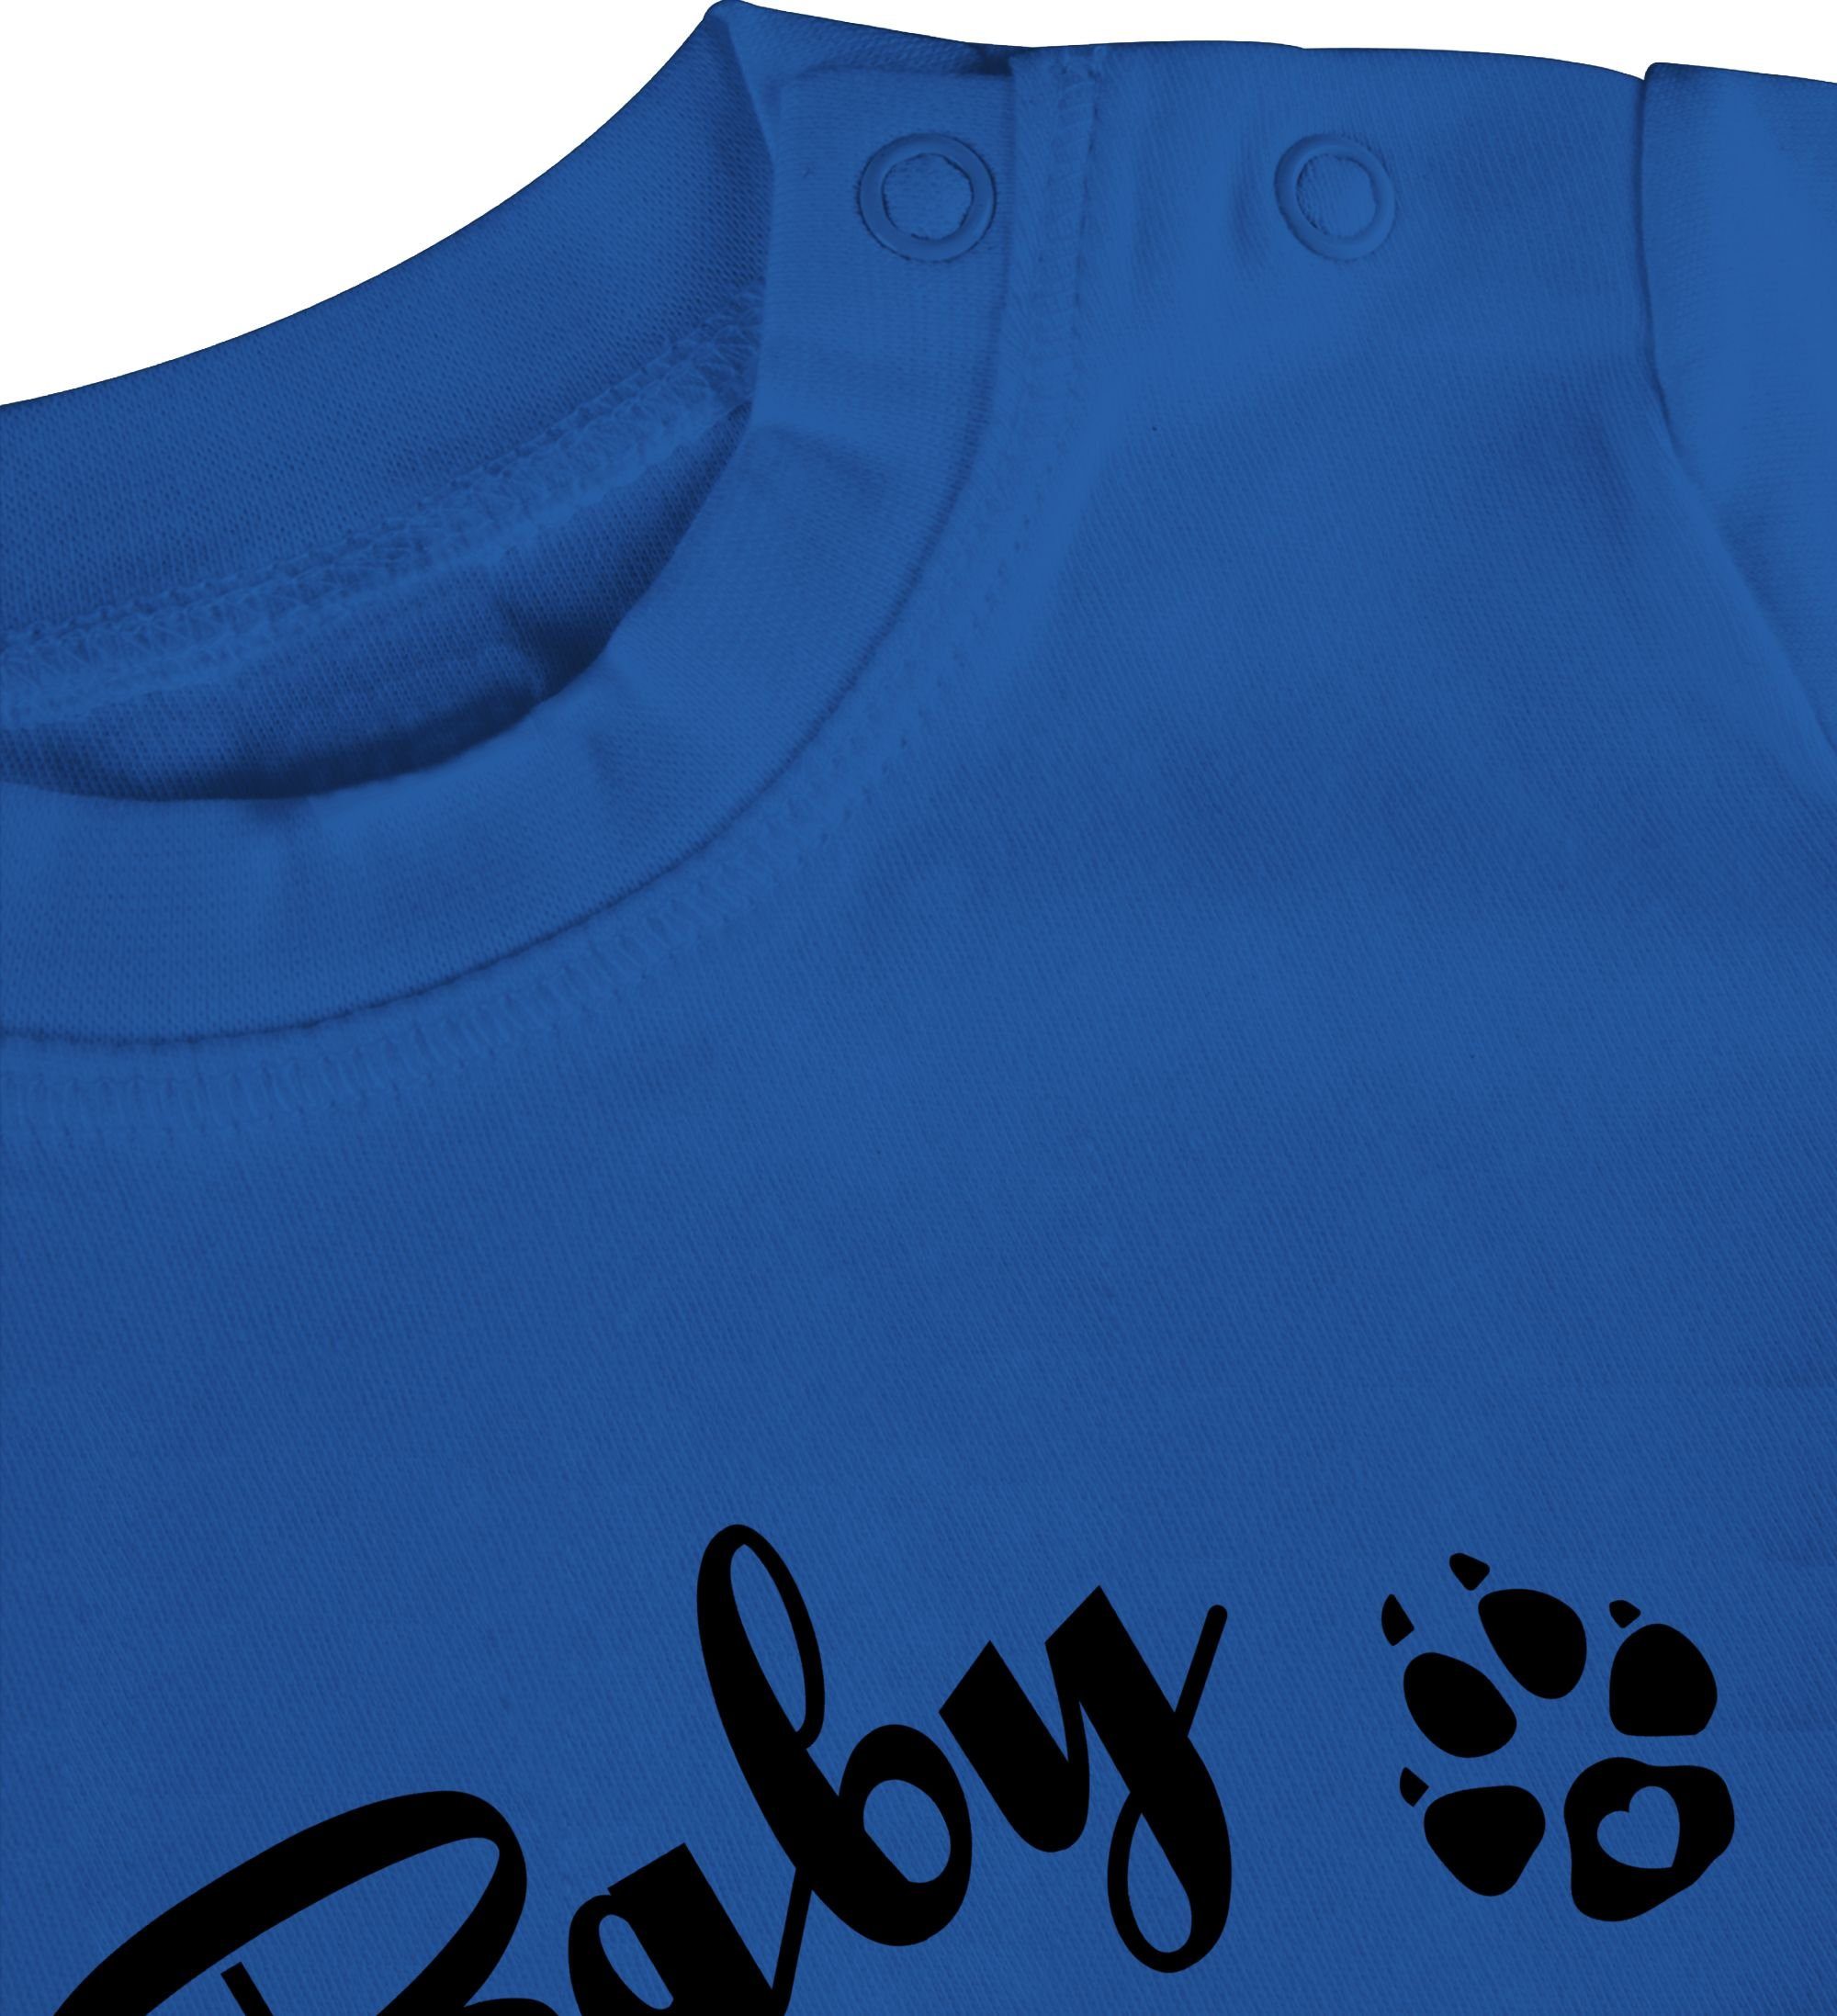 Shirtracer T-Shirt Strampler 2 Lettering Mädchen Junge Royalblau & Baby Bär Baby